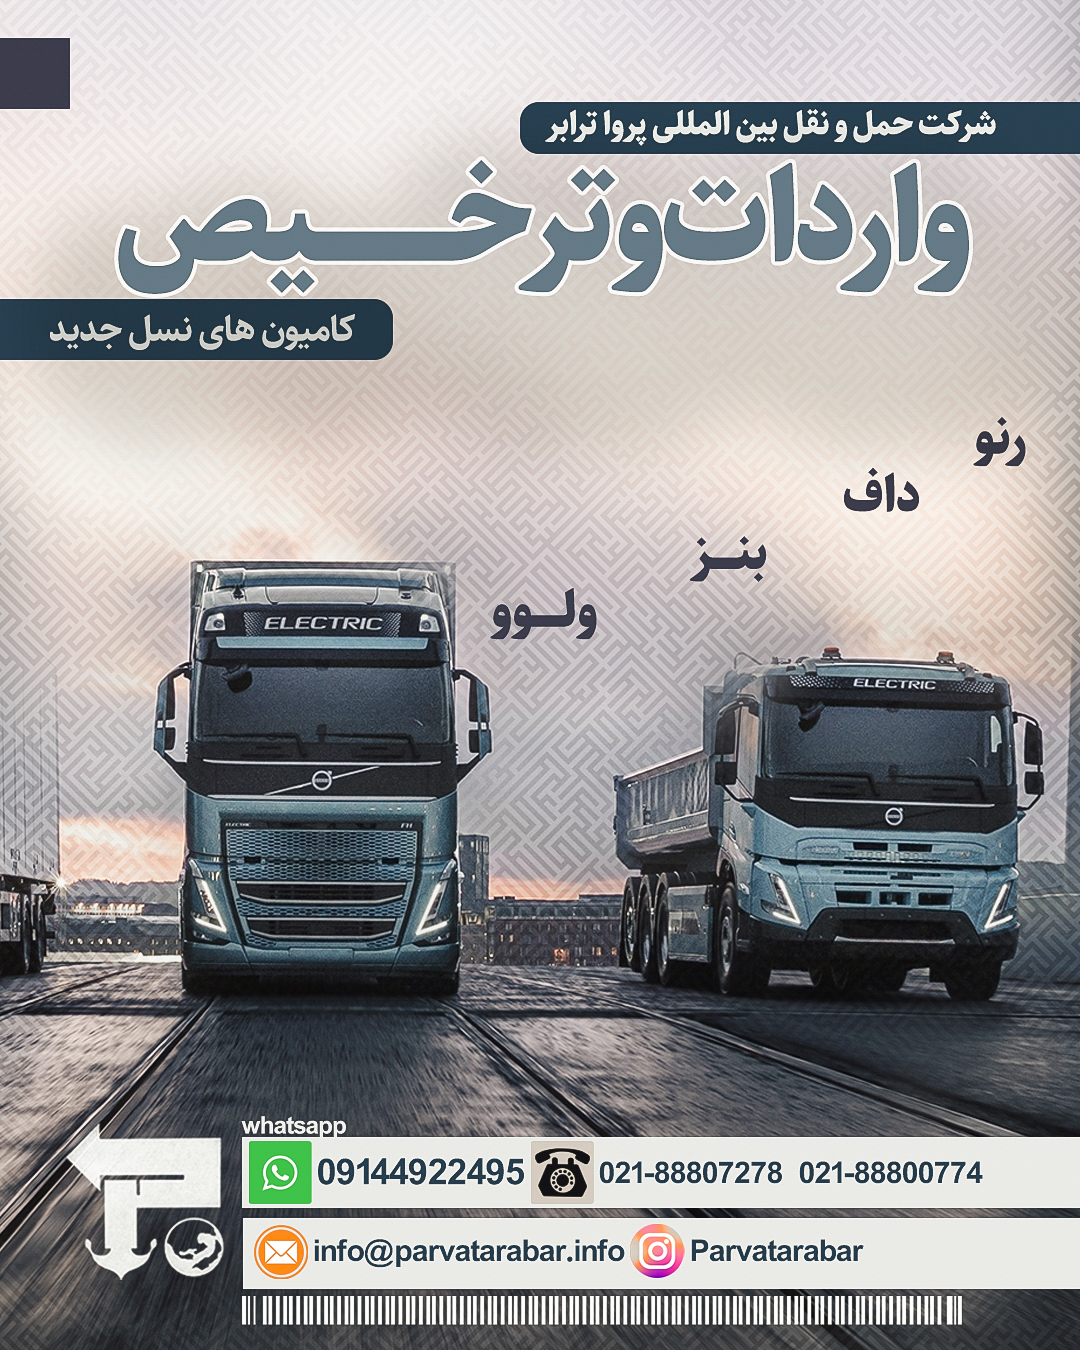 واردات و ترخیص کامیون های وارداتی